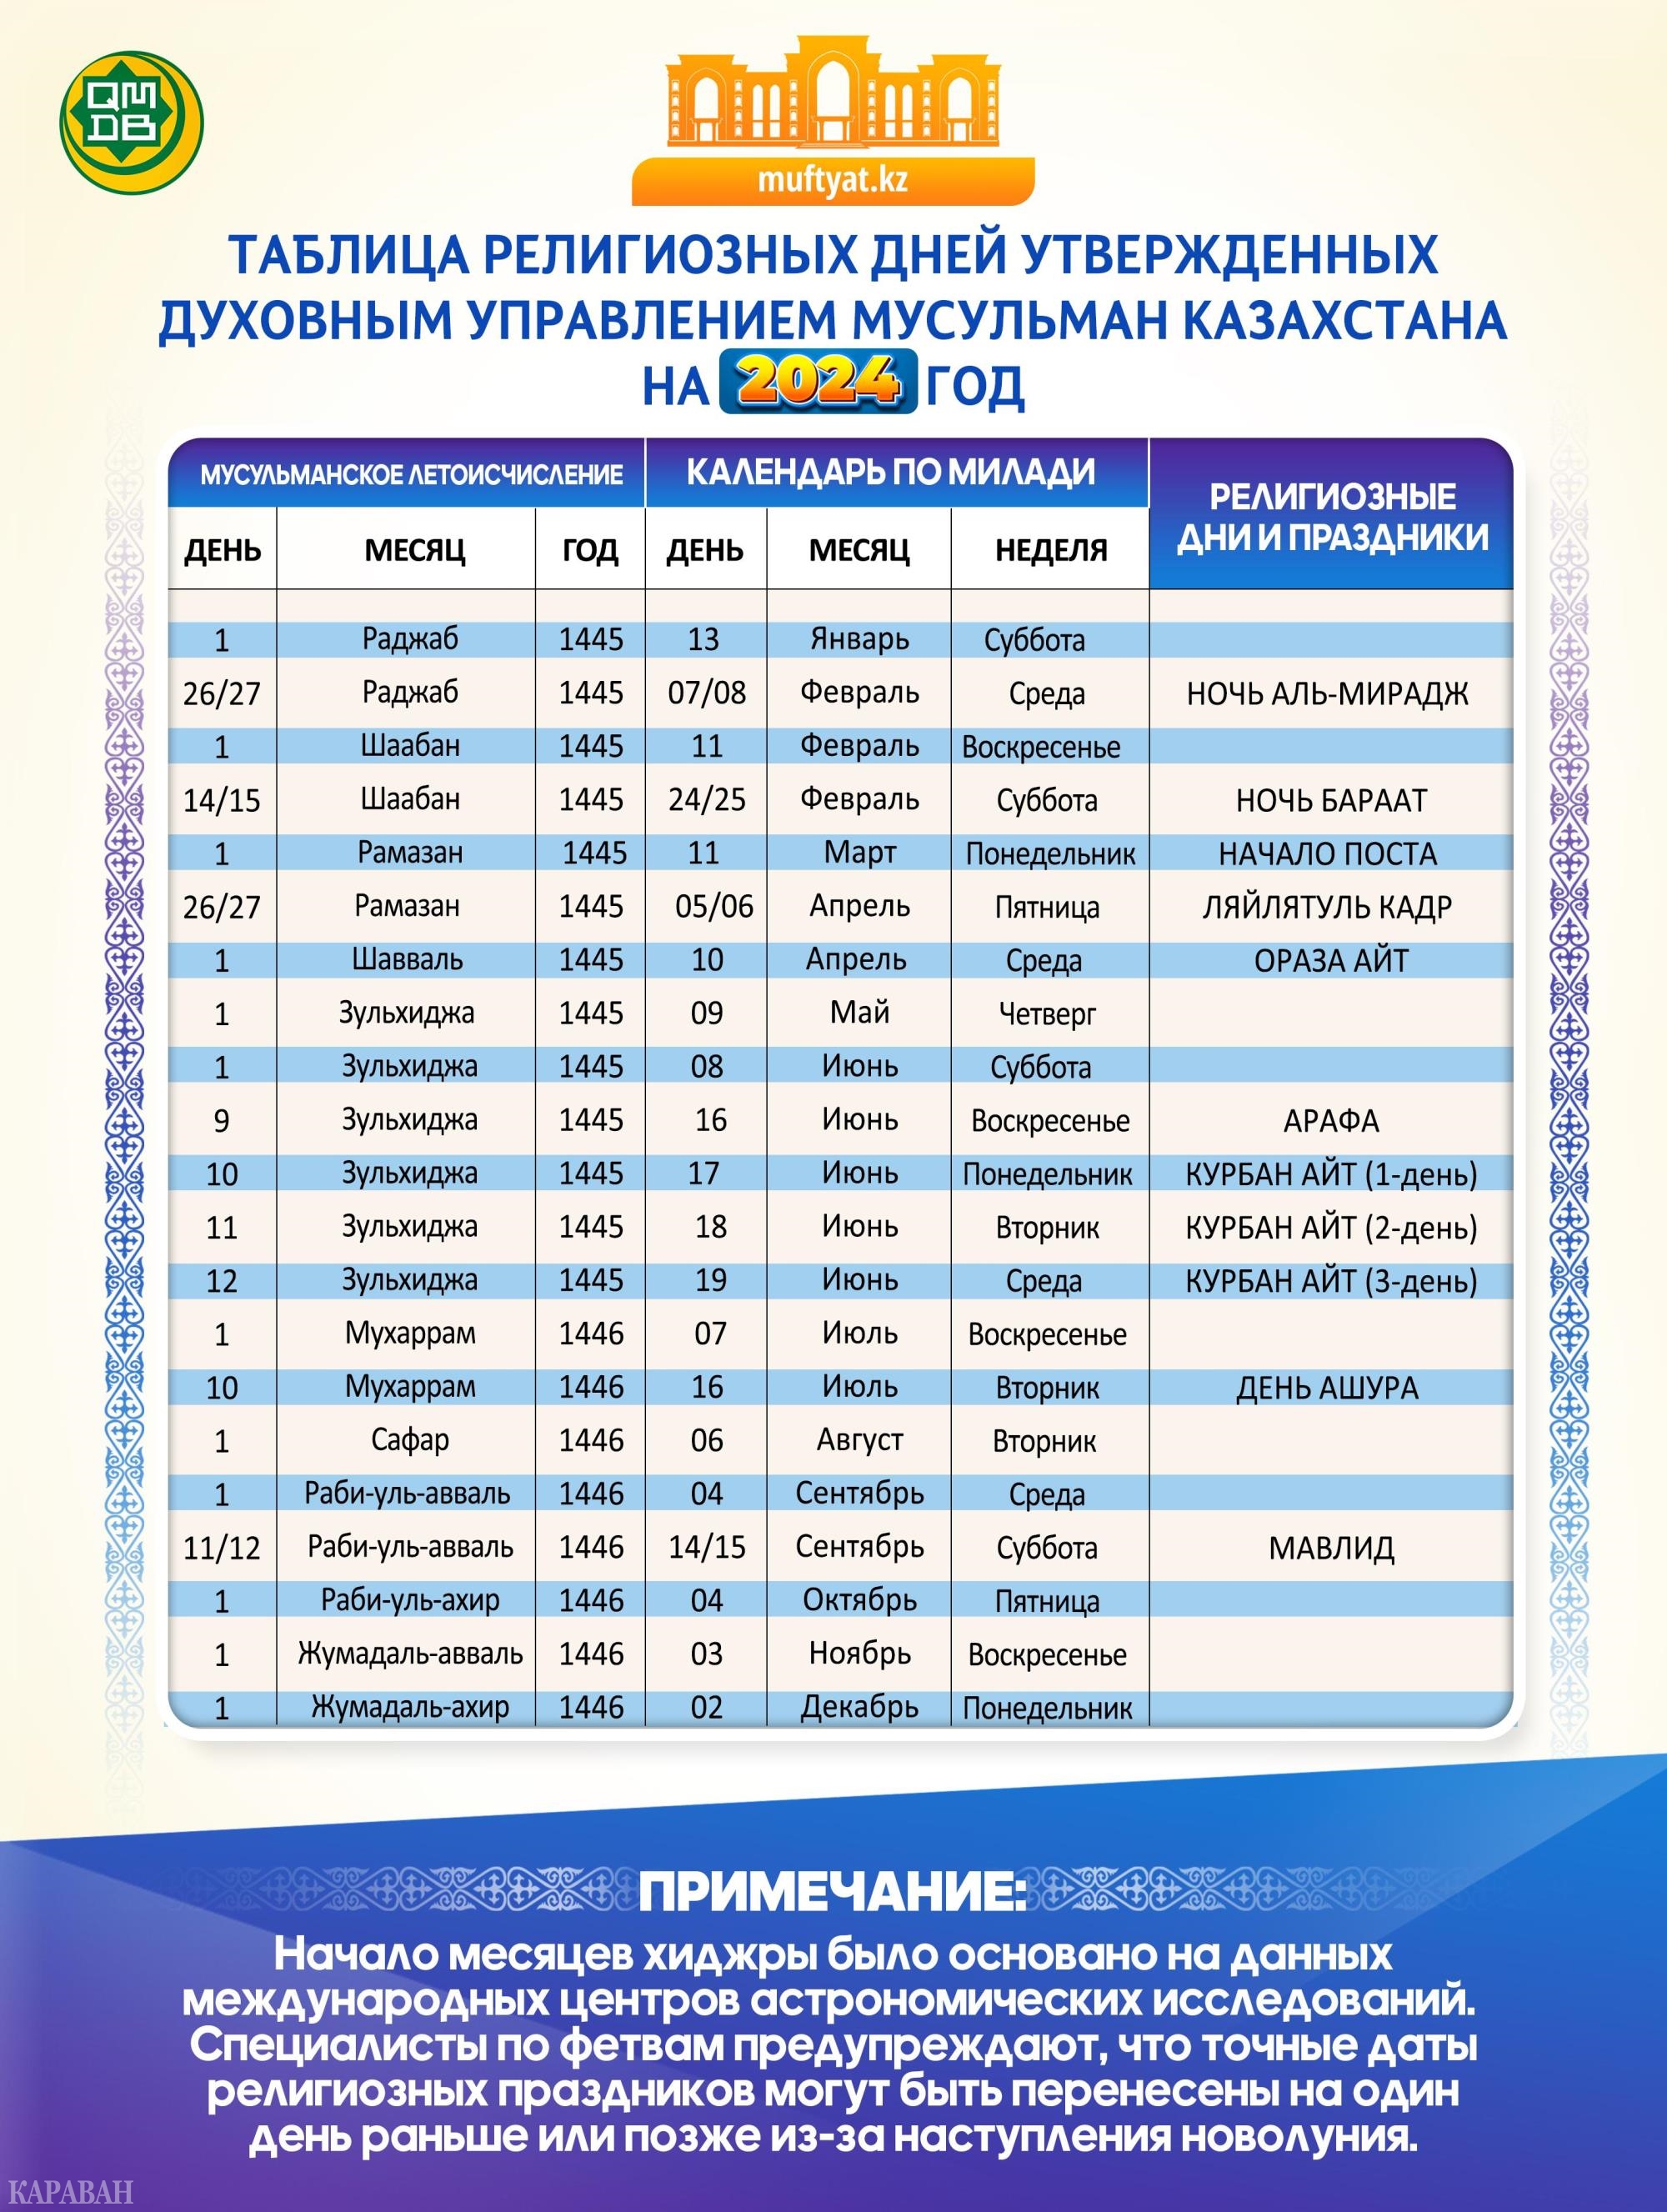 Опубликован календарь мусульманских праздников на 2024 год в Казахстане -  Новости | Караван